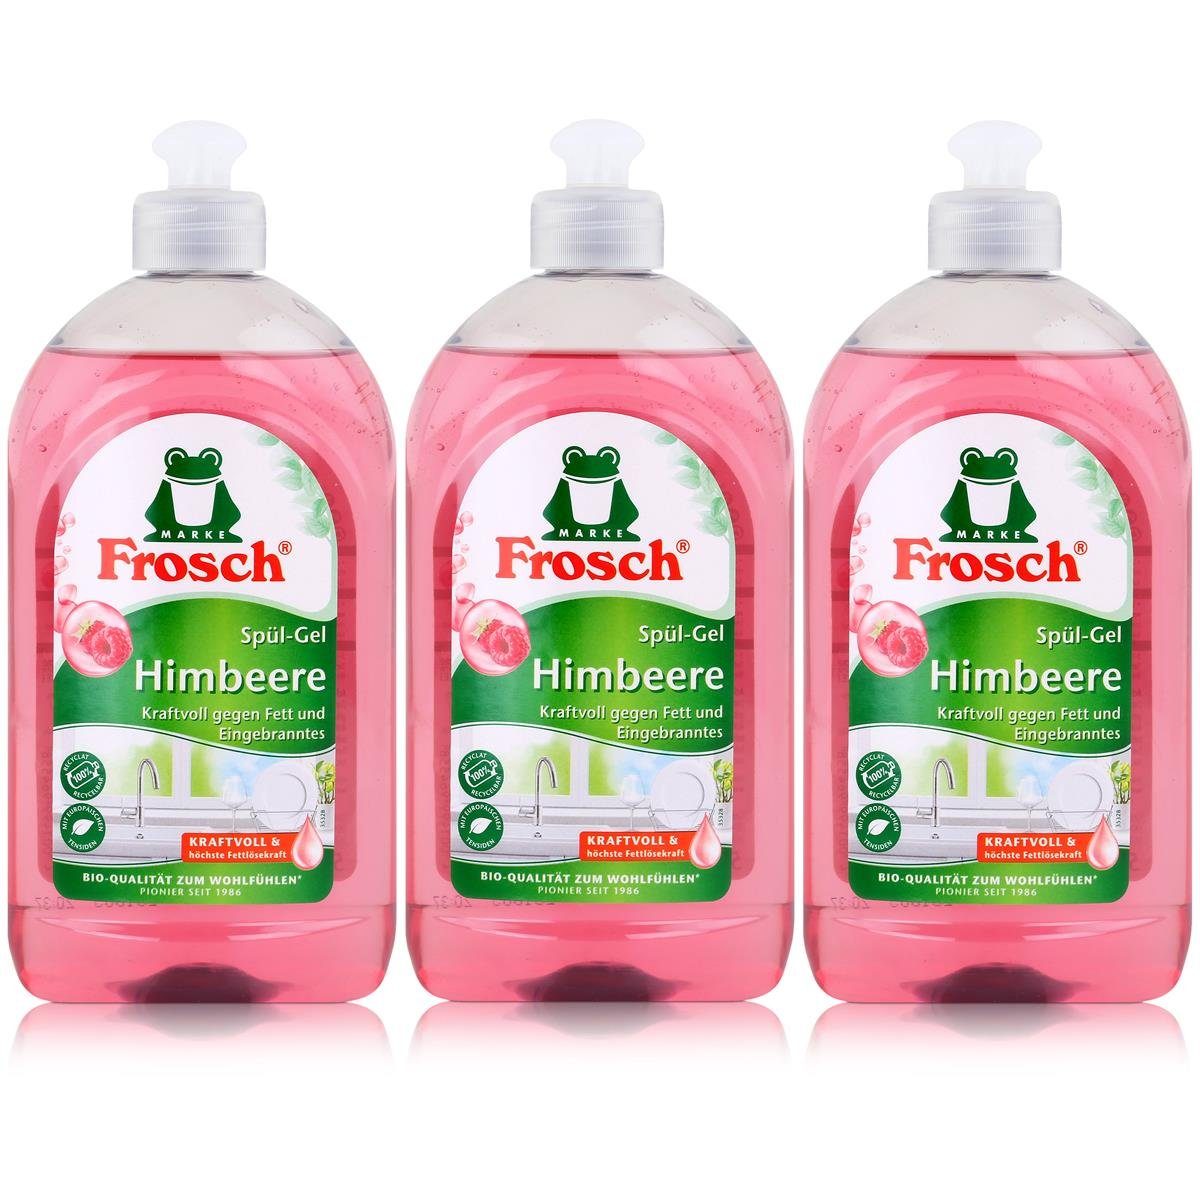 FROSCH Frosch Spül-Gel Himbeer 500ml - Frei von Mikroplastik (3er Pack) Geschirrspülmittel